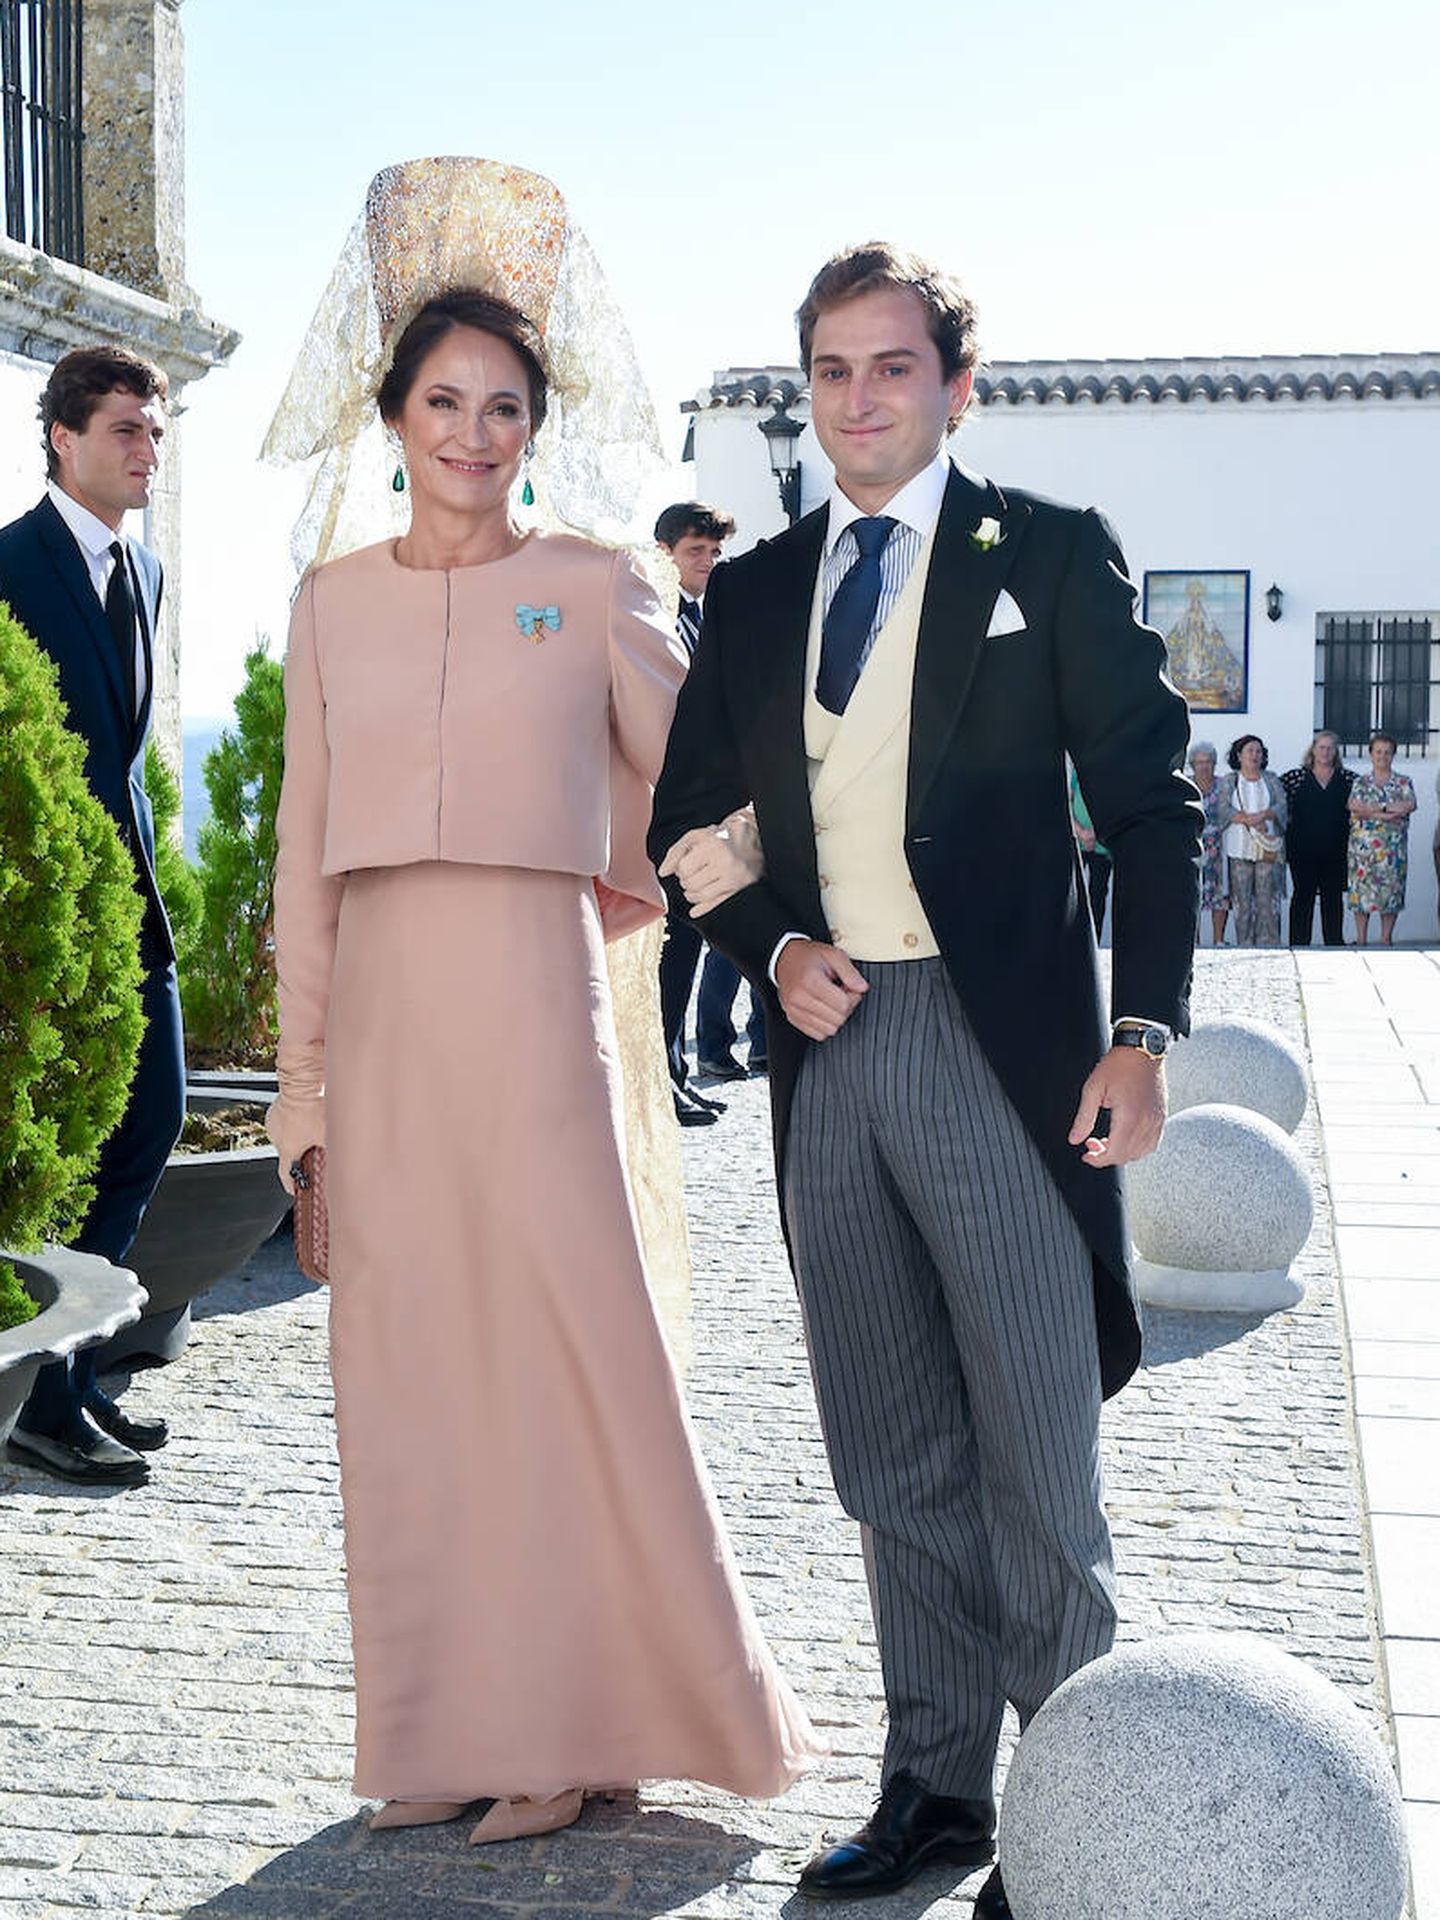 Pilar Benítez en la boda de su hijo Javier Prado. (Limited Pictures)